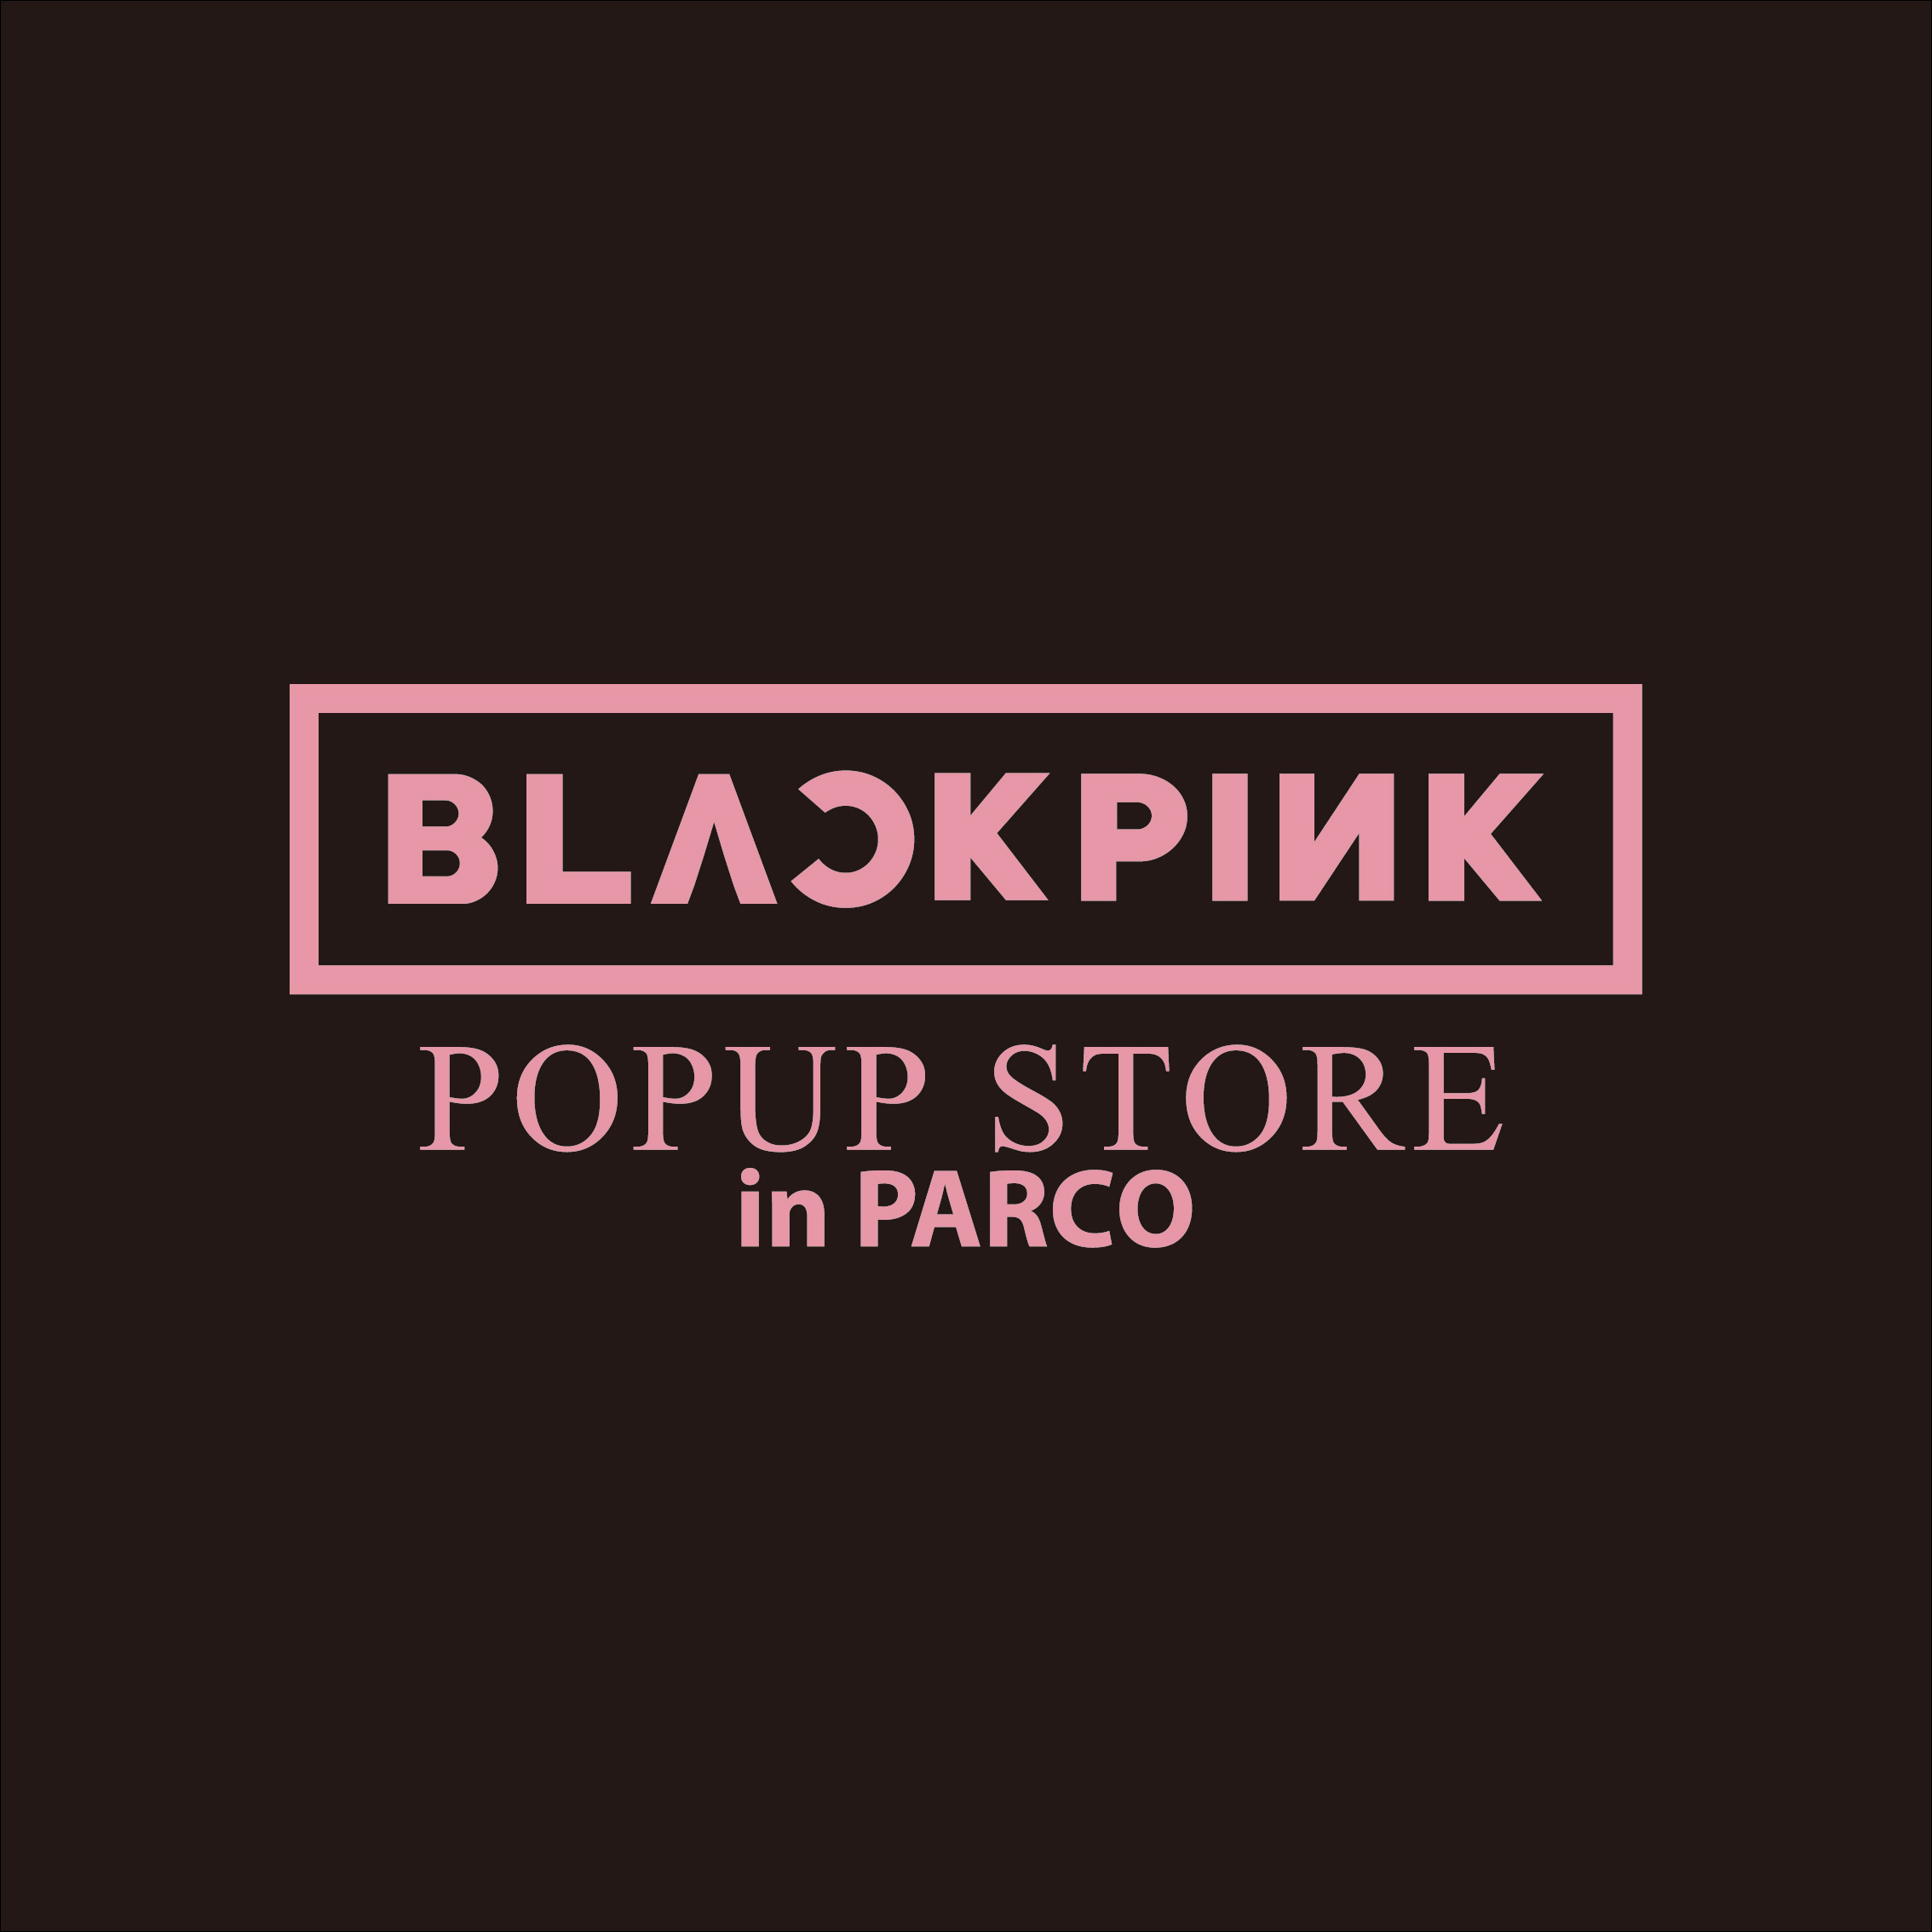 【福岡会場】BLACKPINK POPUP STORE in PARCO